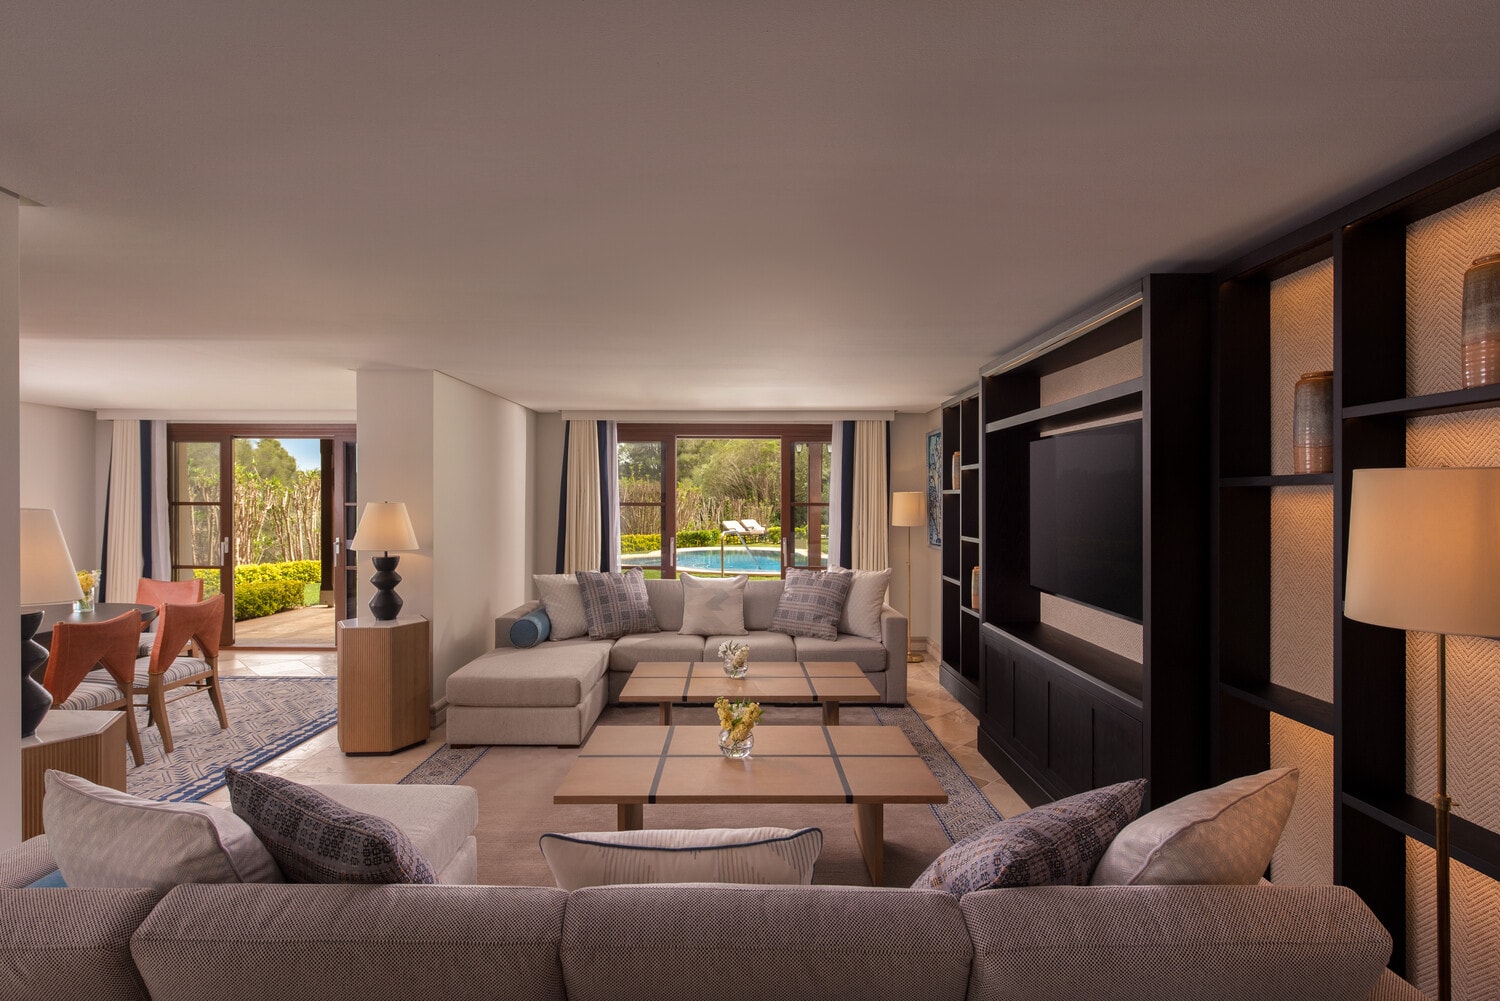 Private 4-bedroom villa with private pool in the prestigious area of Son Vida hills, near Palma de Mallorca